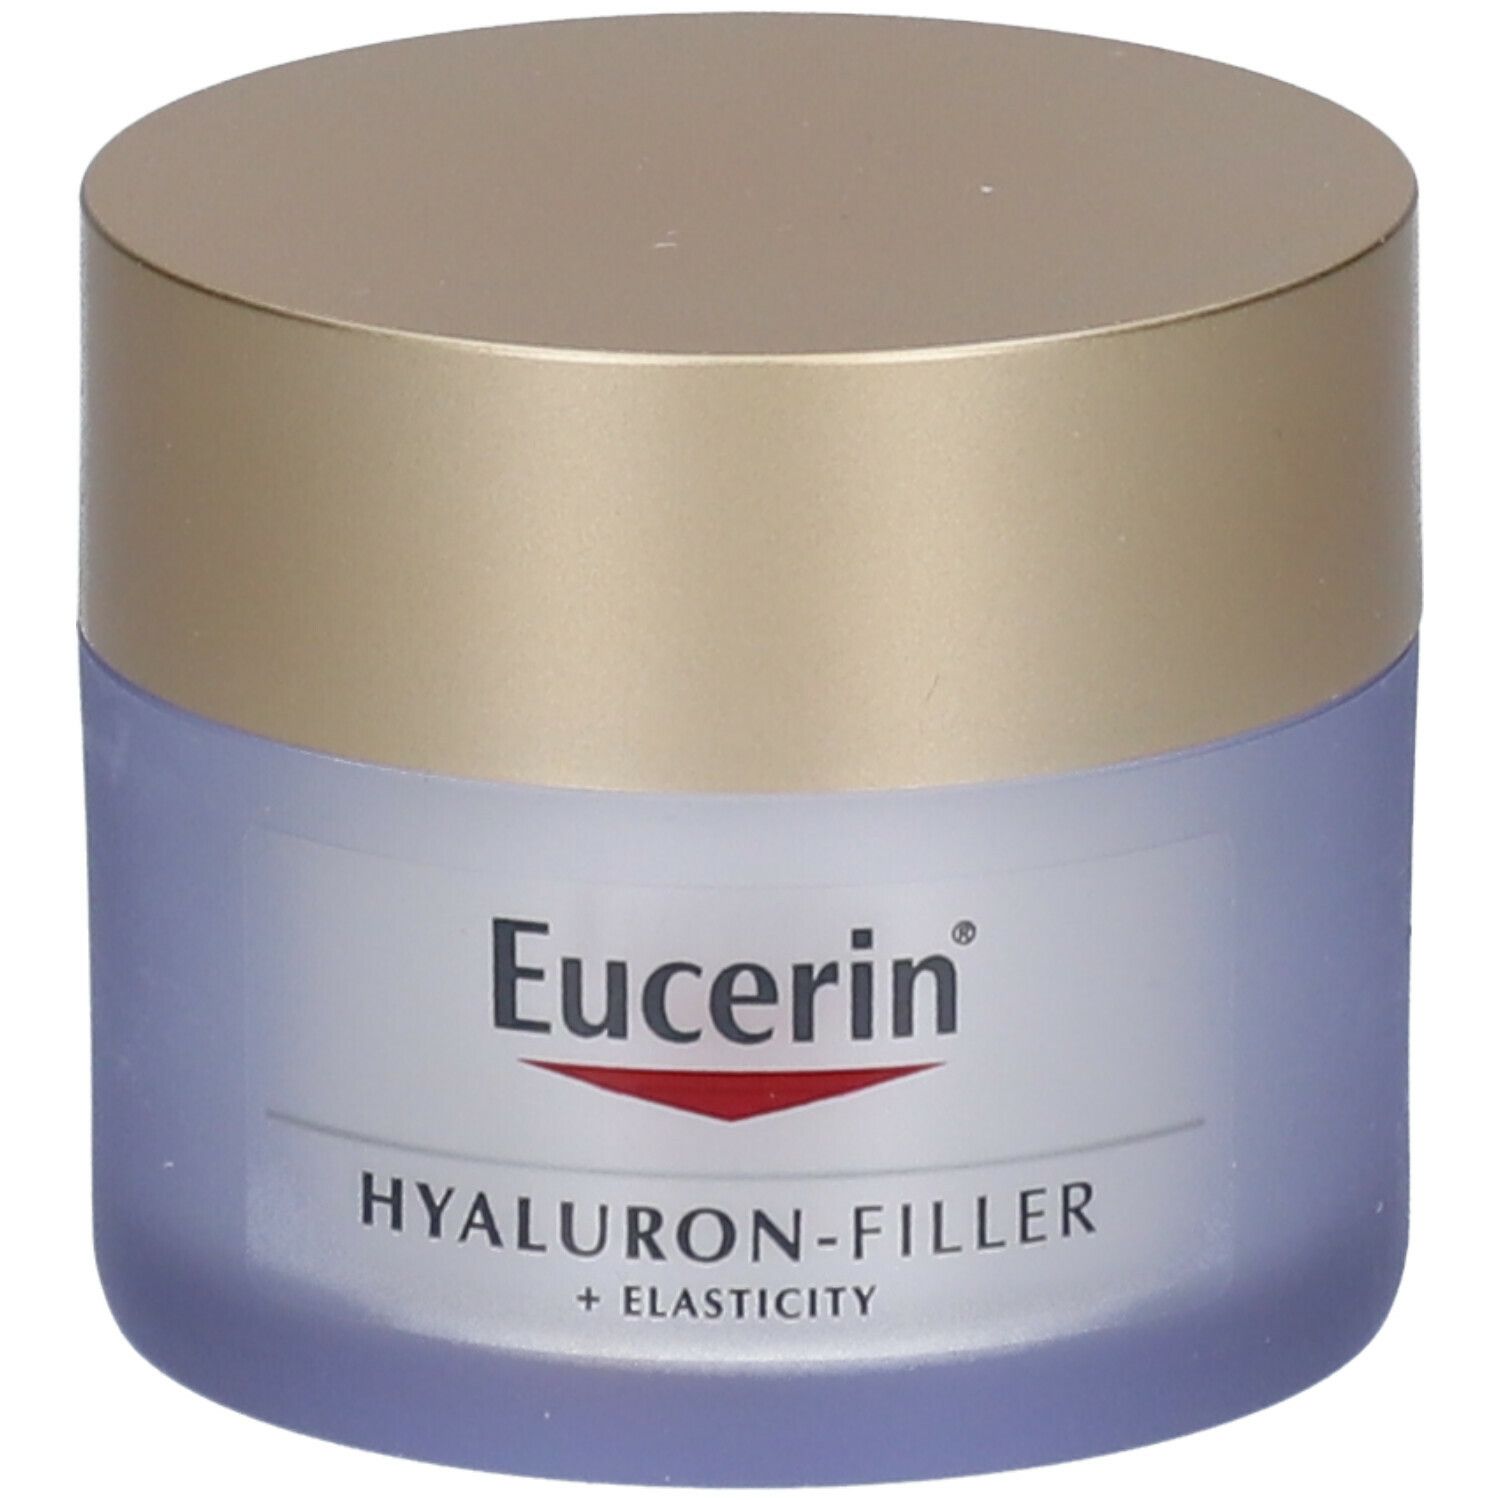 Eucerin® Hyaluron-Filler + Elasticity Soin de Jour SPF 30